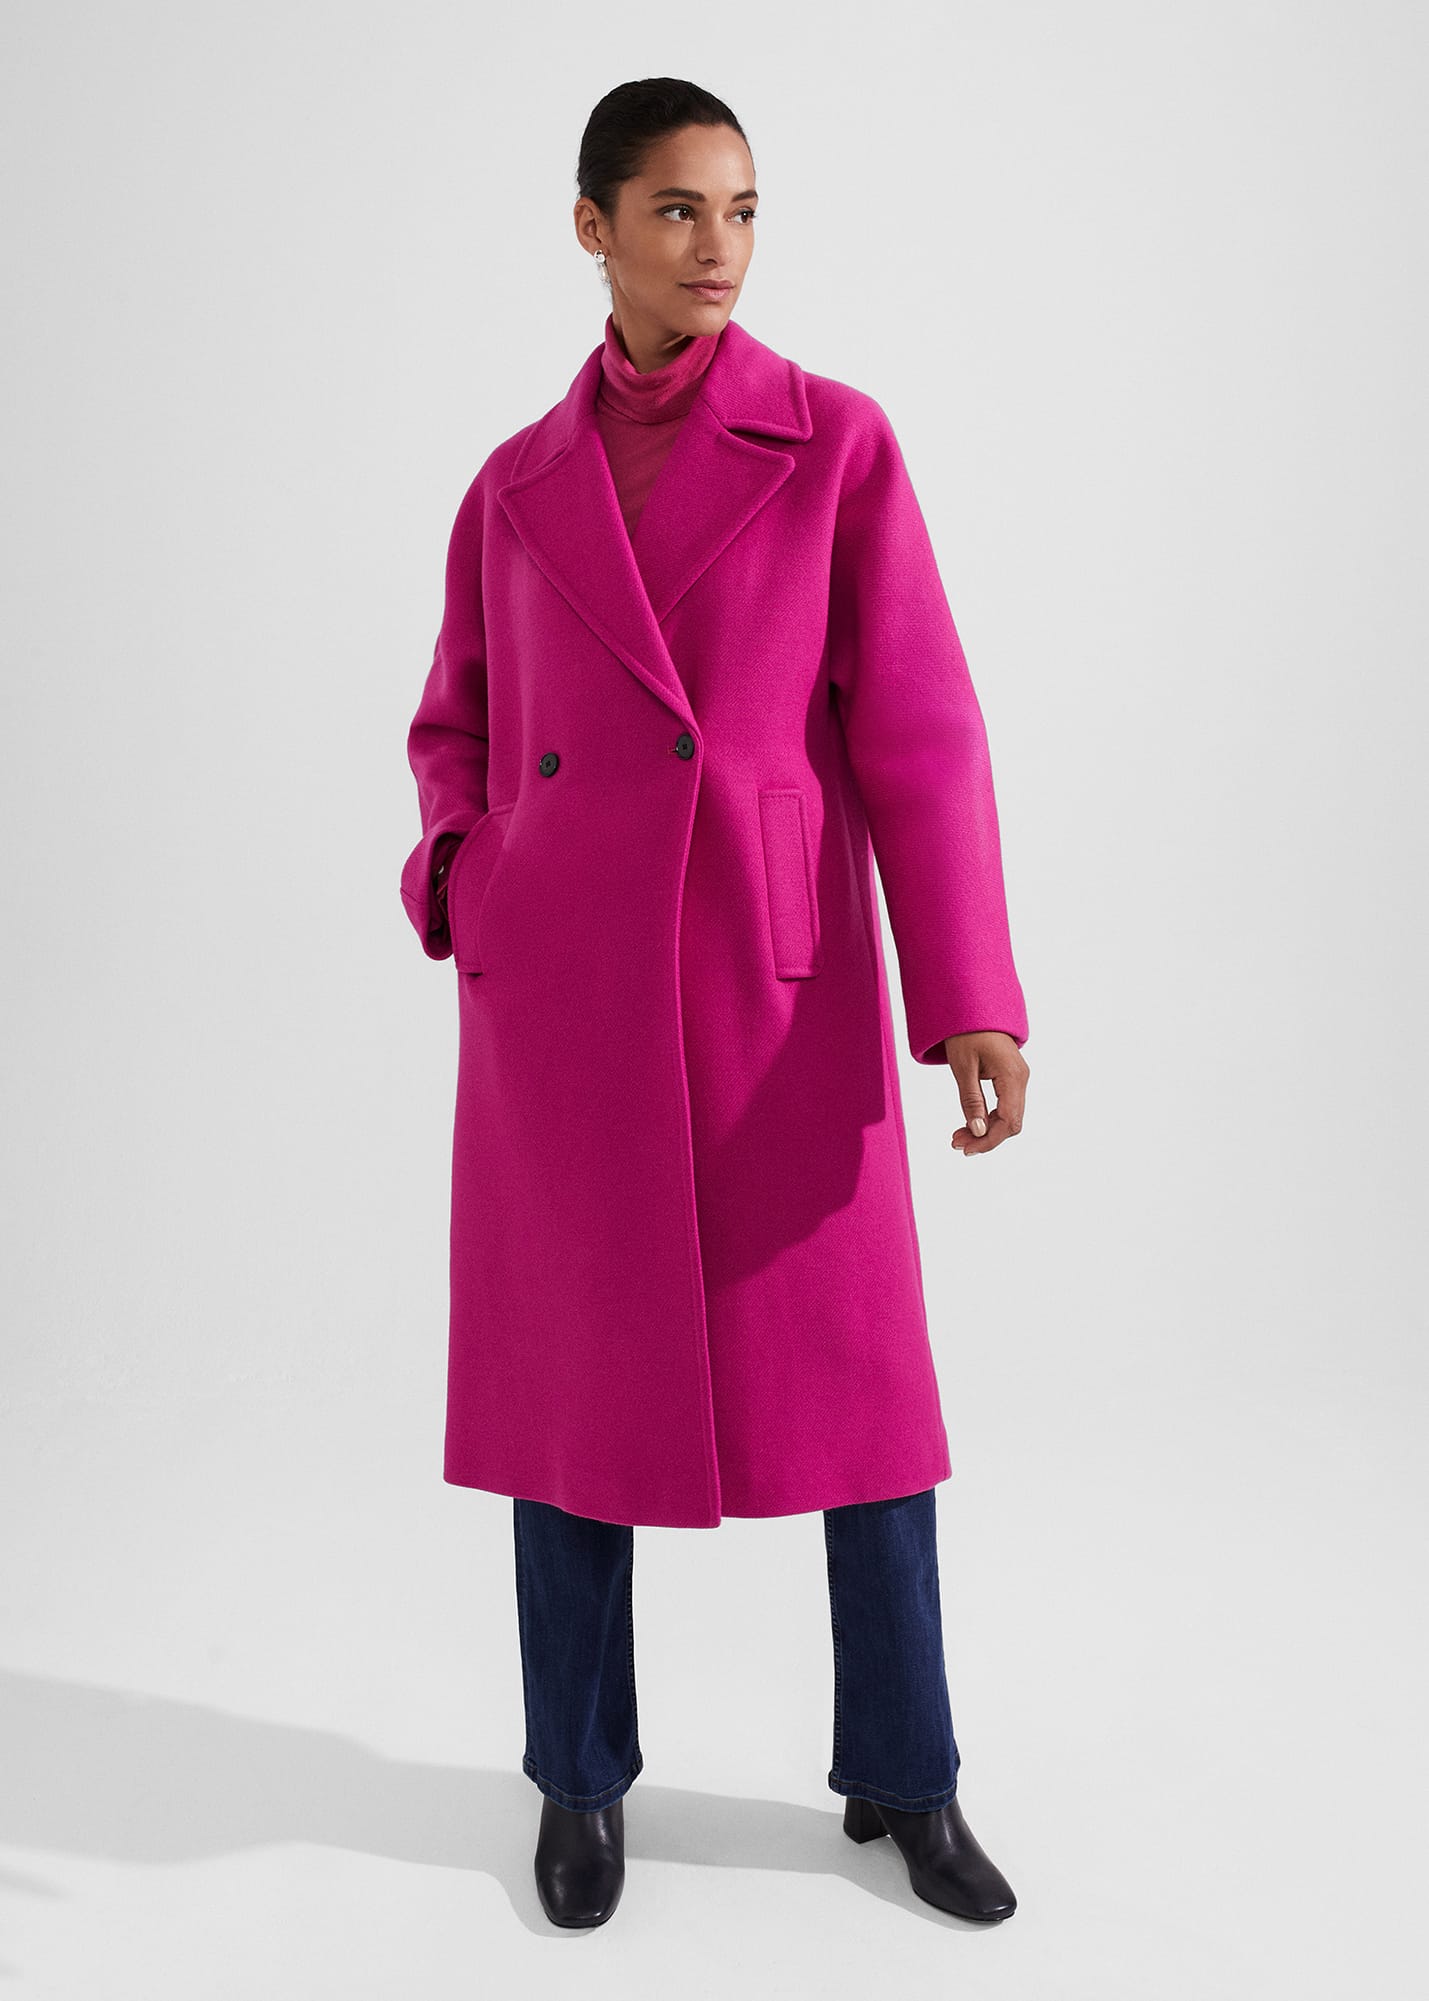 Hobbs Women's Carine Wool Coat - Bright Pink